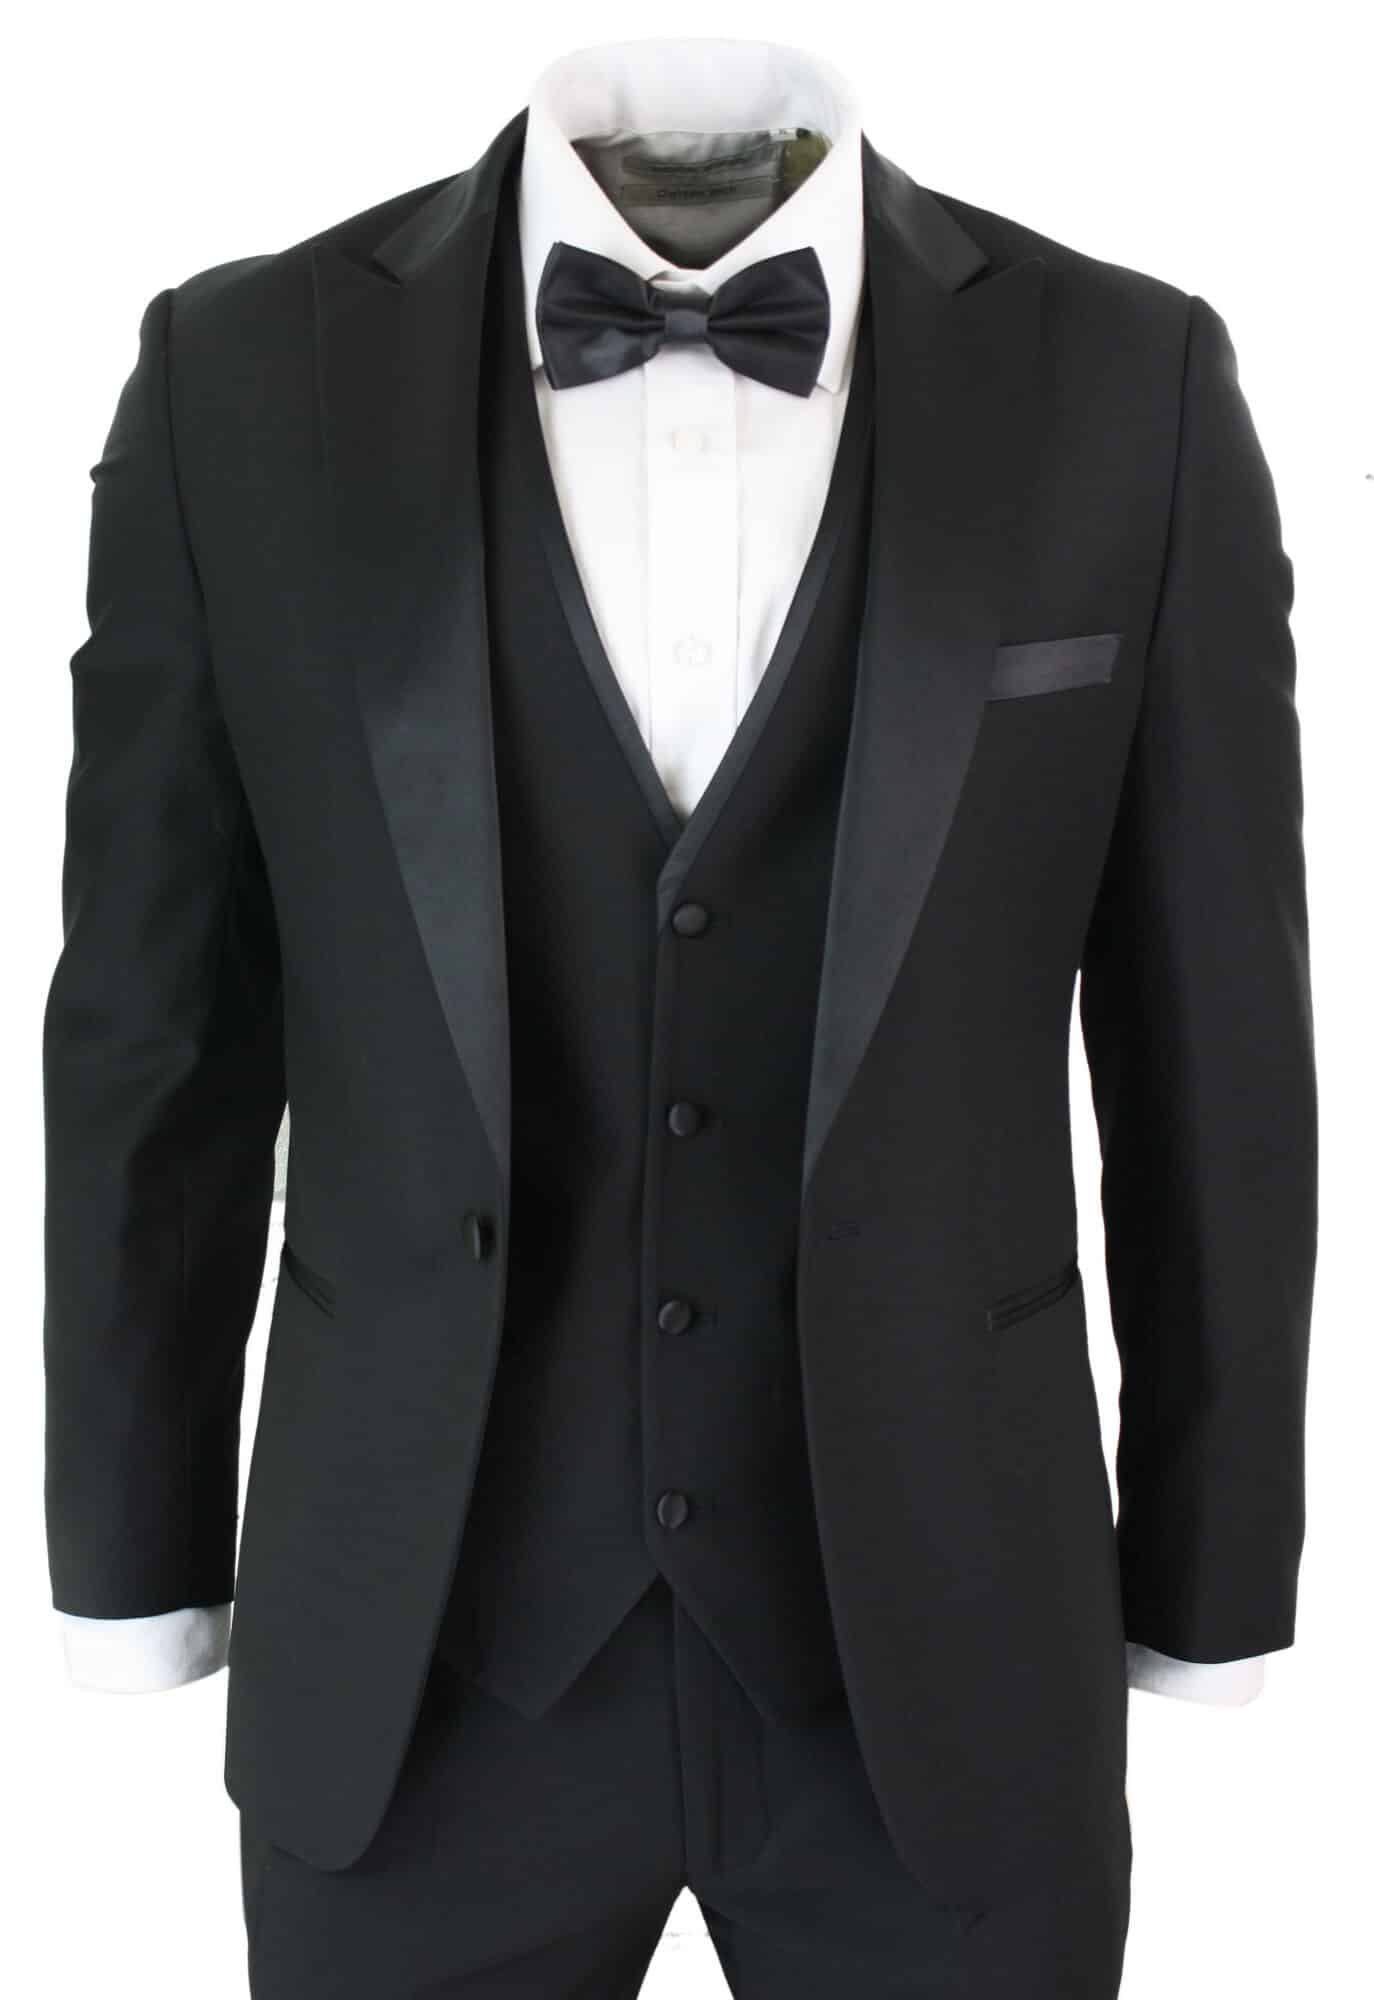 Buy Wine Italian Tuxedo Suit Online | Samyakk